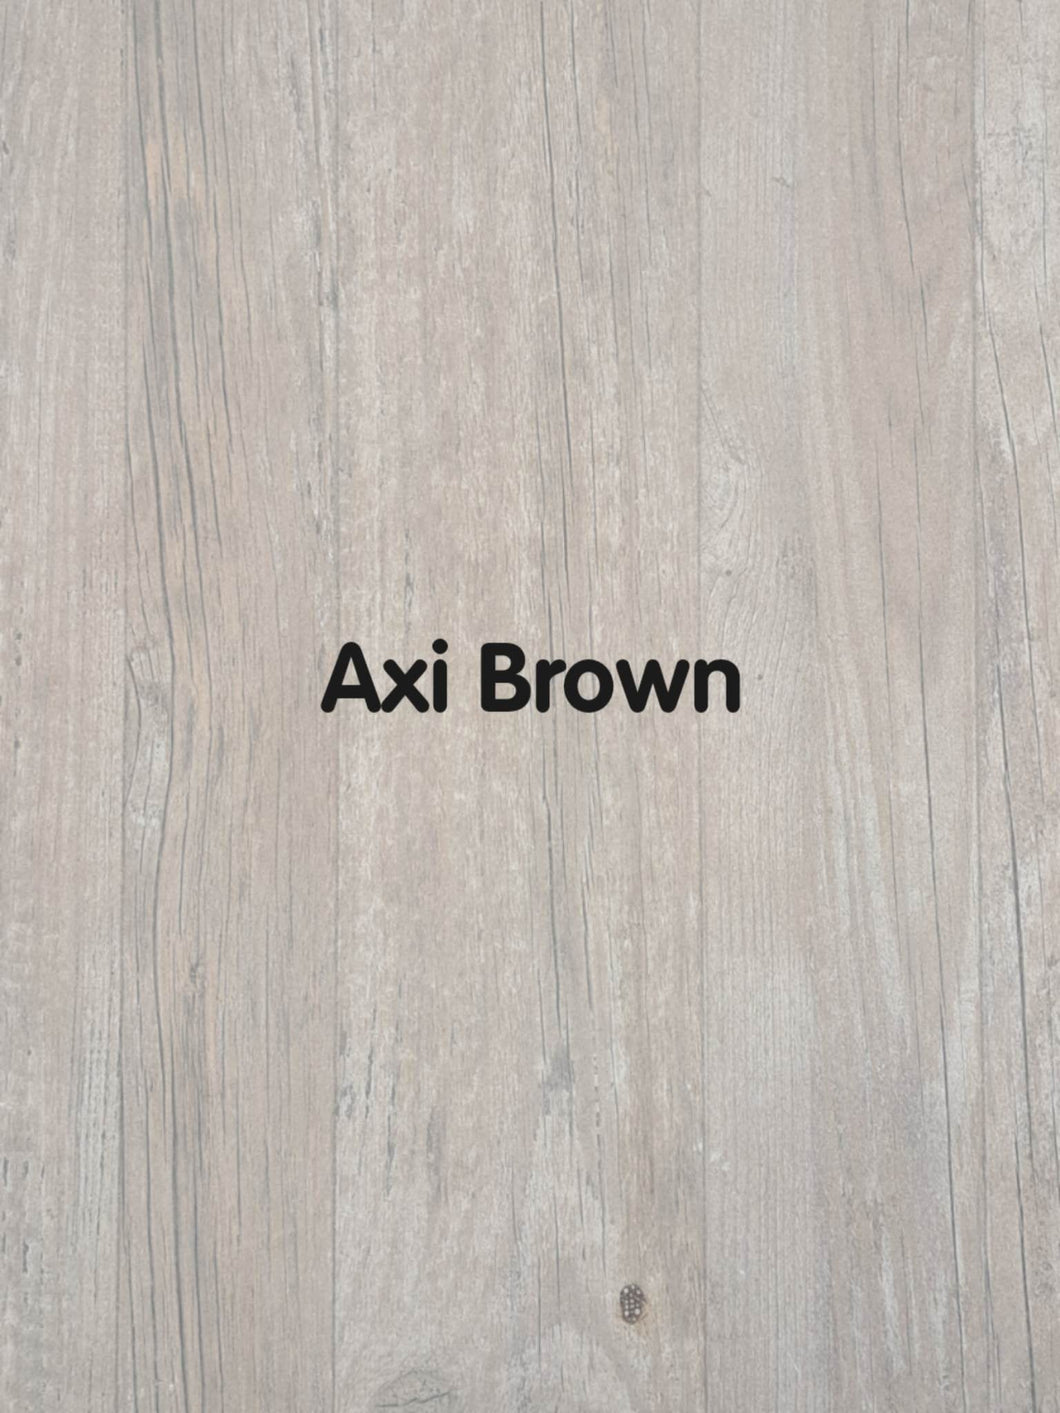 Axi Brown.jpg